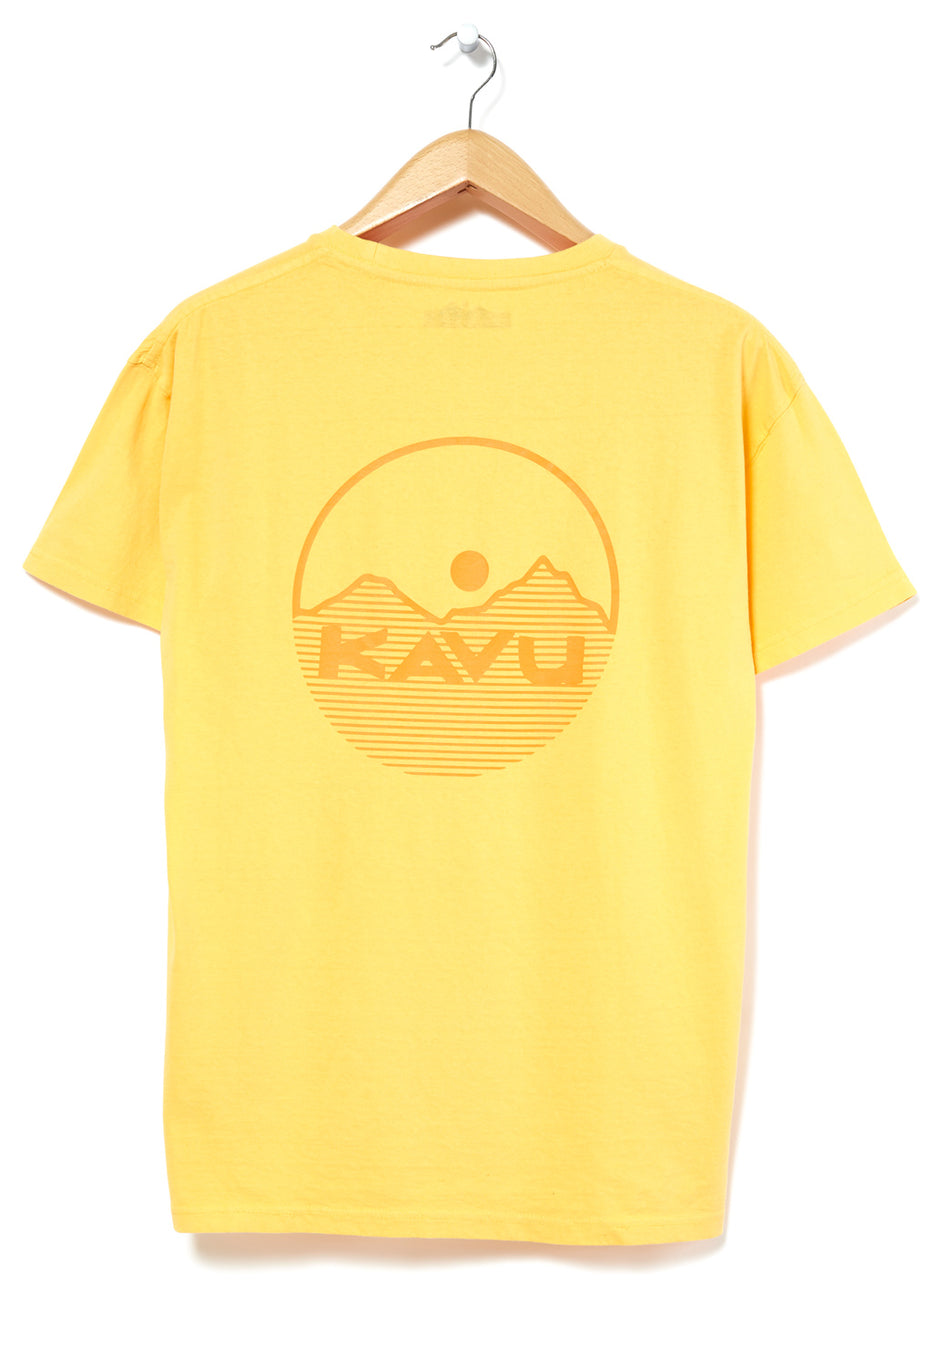 KAVU Busy Men's T-Shirt 5